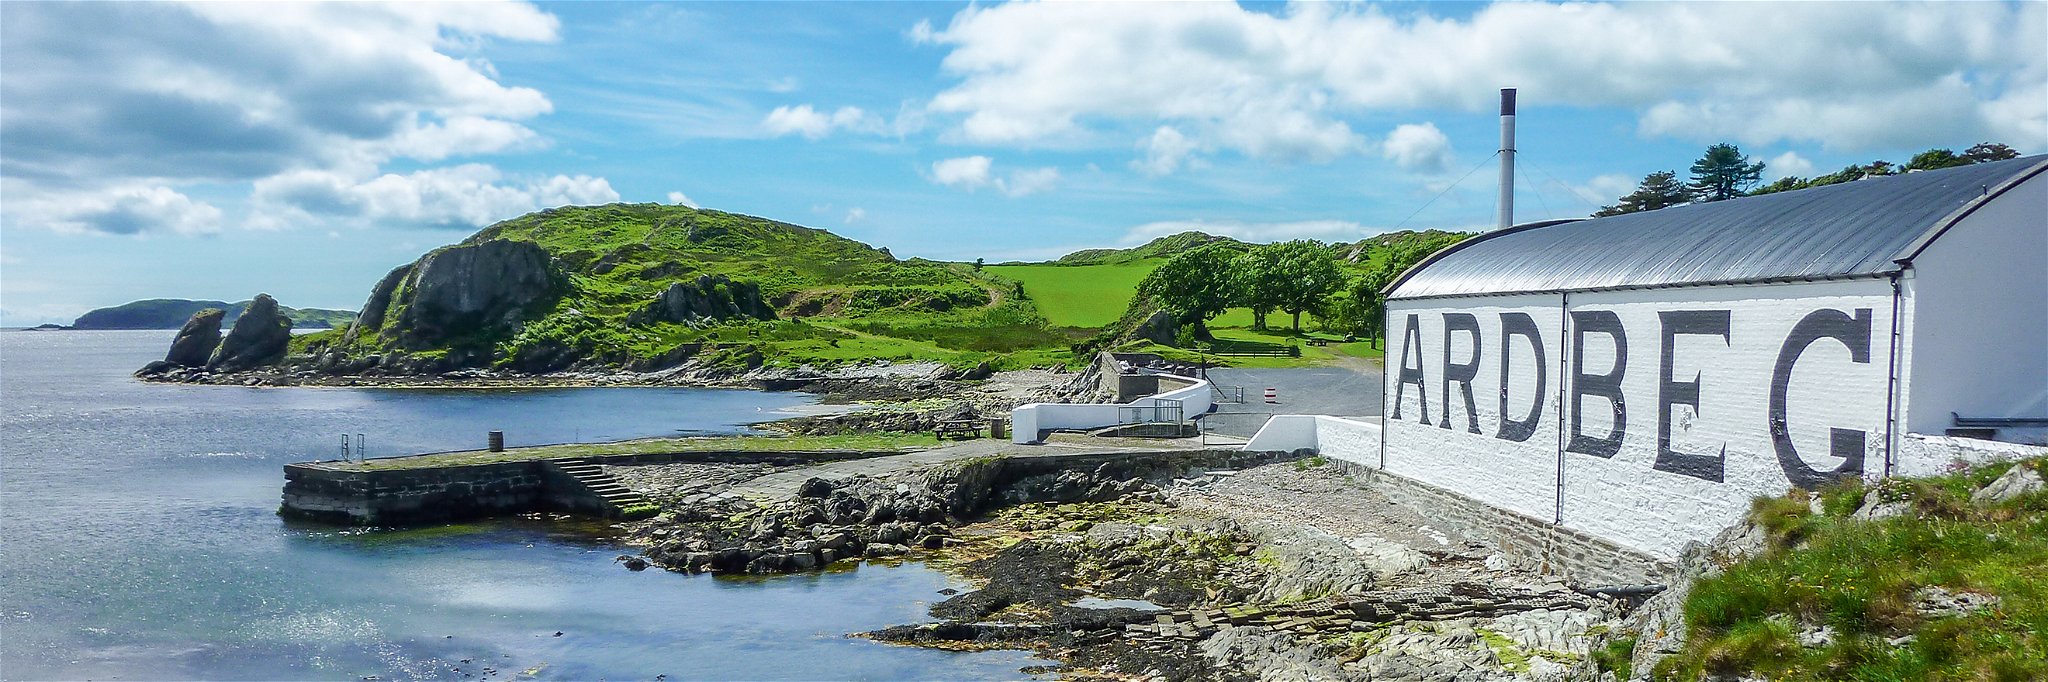 Am Südufer der Insel Islay liegt die Whisky-Destillerie Ardbeg, deren Ursprünge bis in das Jahr 1794 zurückreichen.